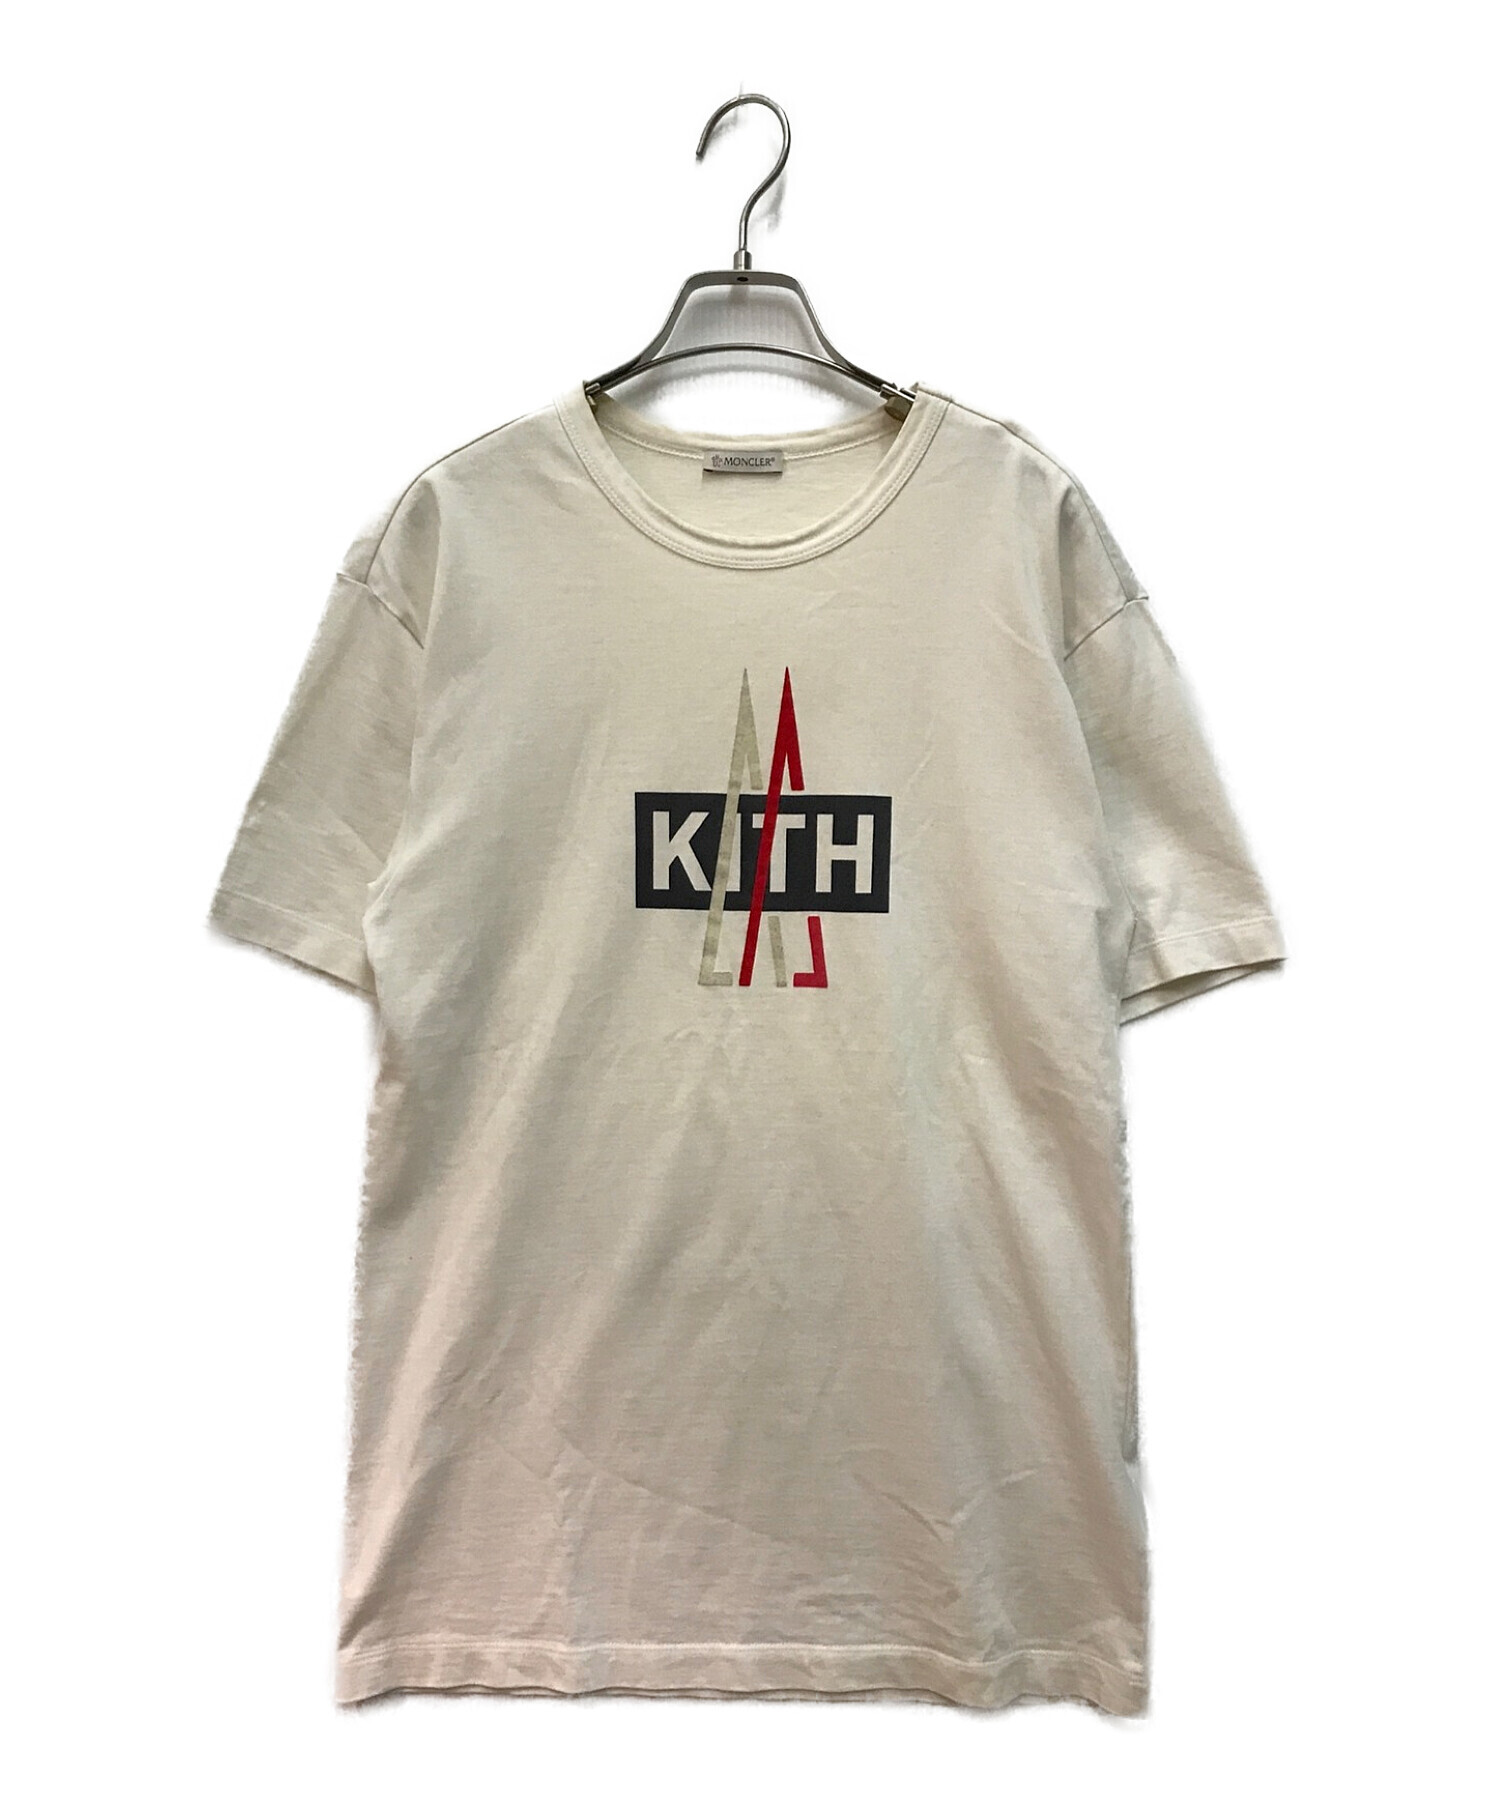 KITH/キス × モンクレール コラボ ロゴ Tシャツ 白 sizeM-